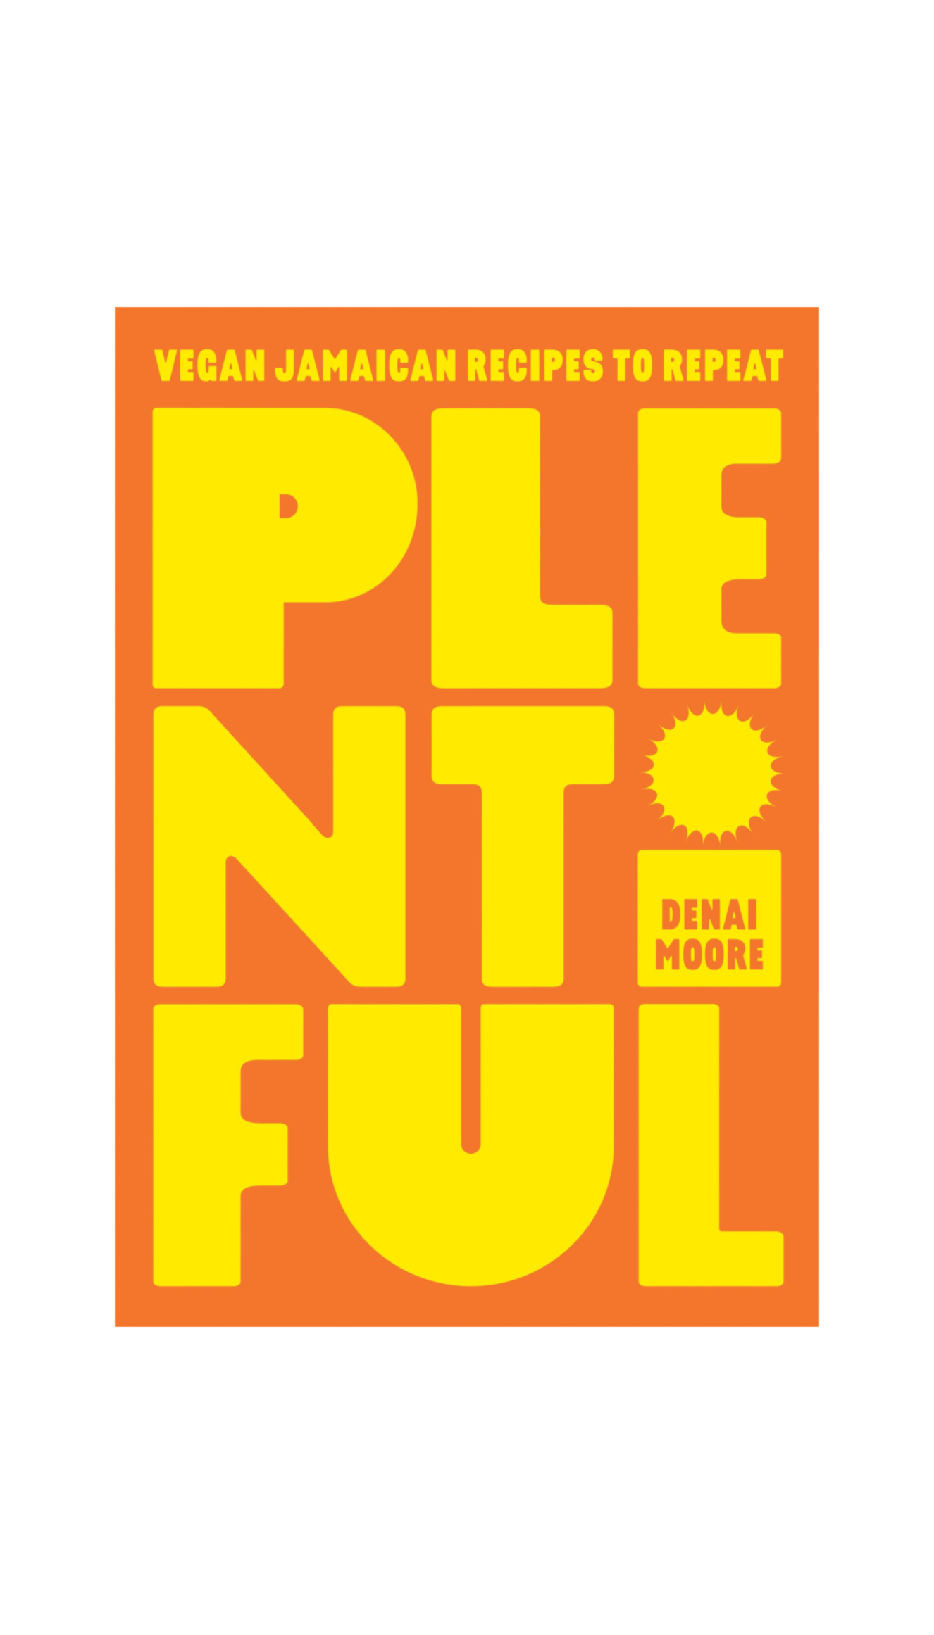 Plentiful: Vegan Jamaican Recipes to Repeat